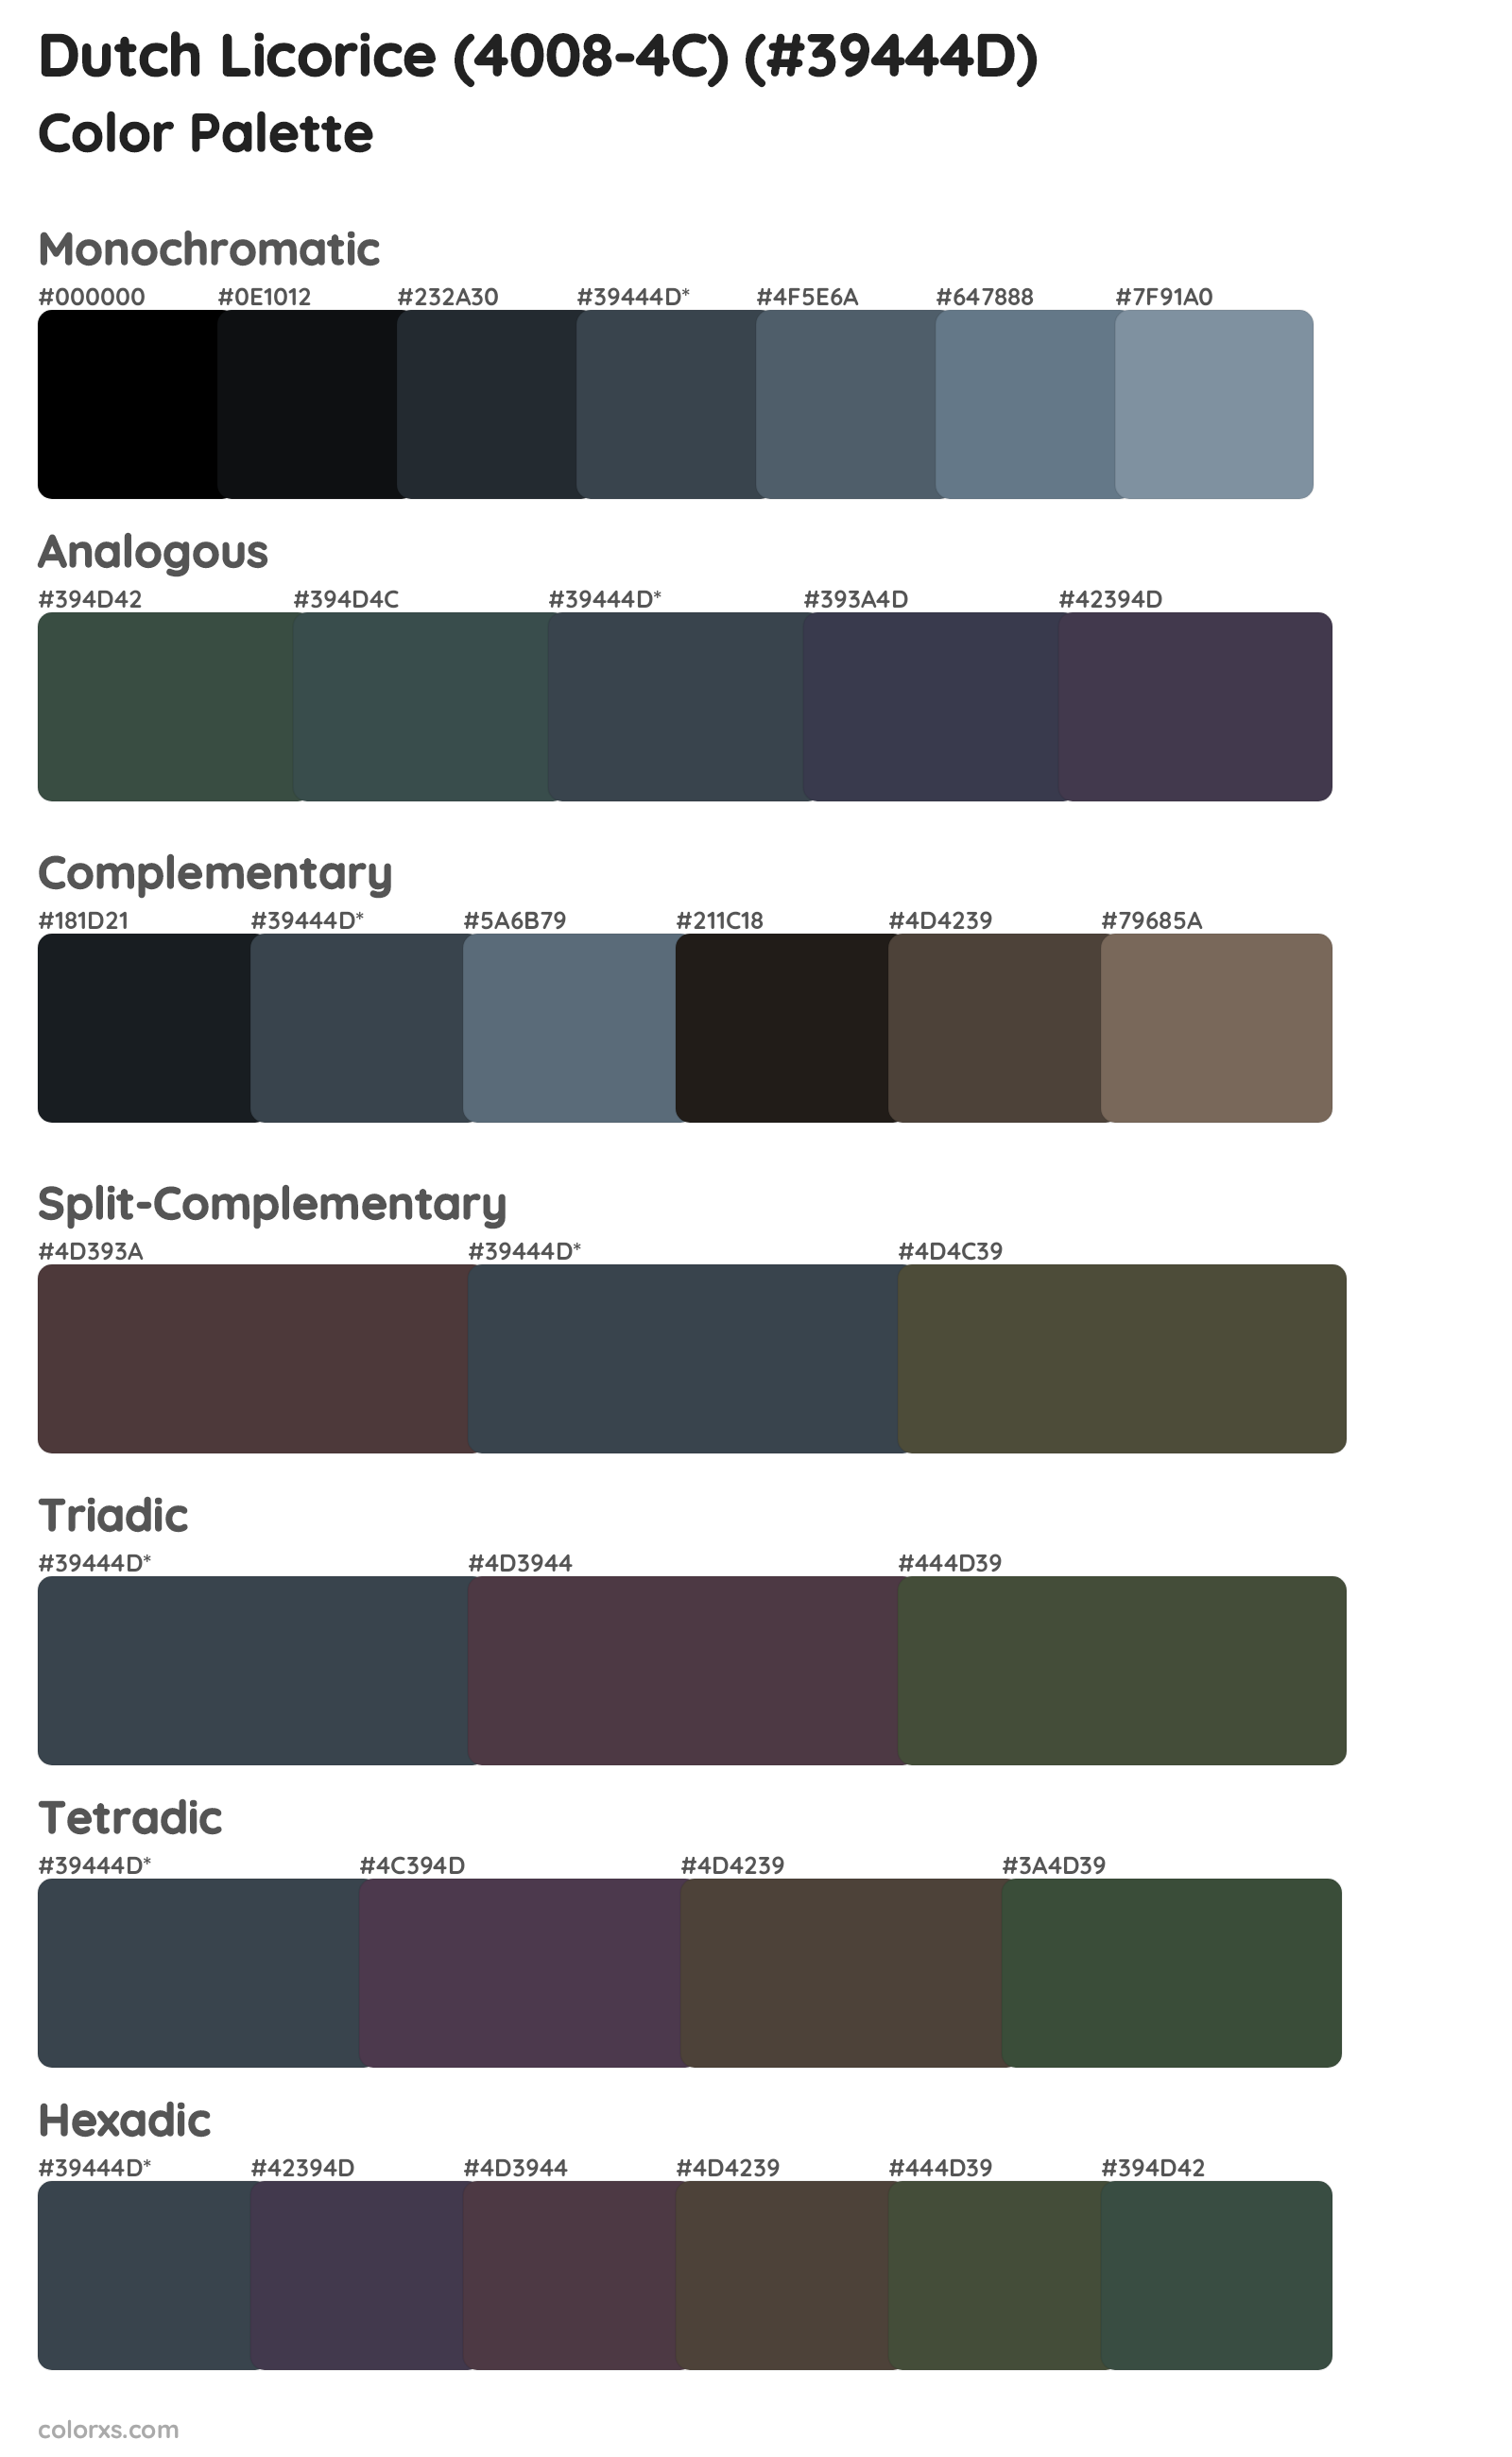 Dutch Licorice (4008-4C) Color Scheme Palettes